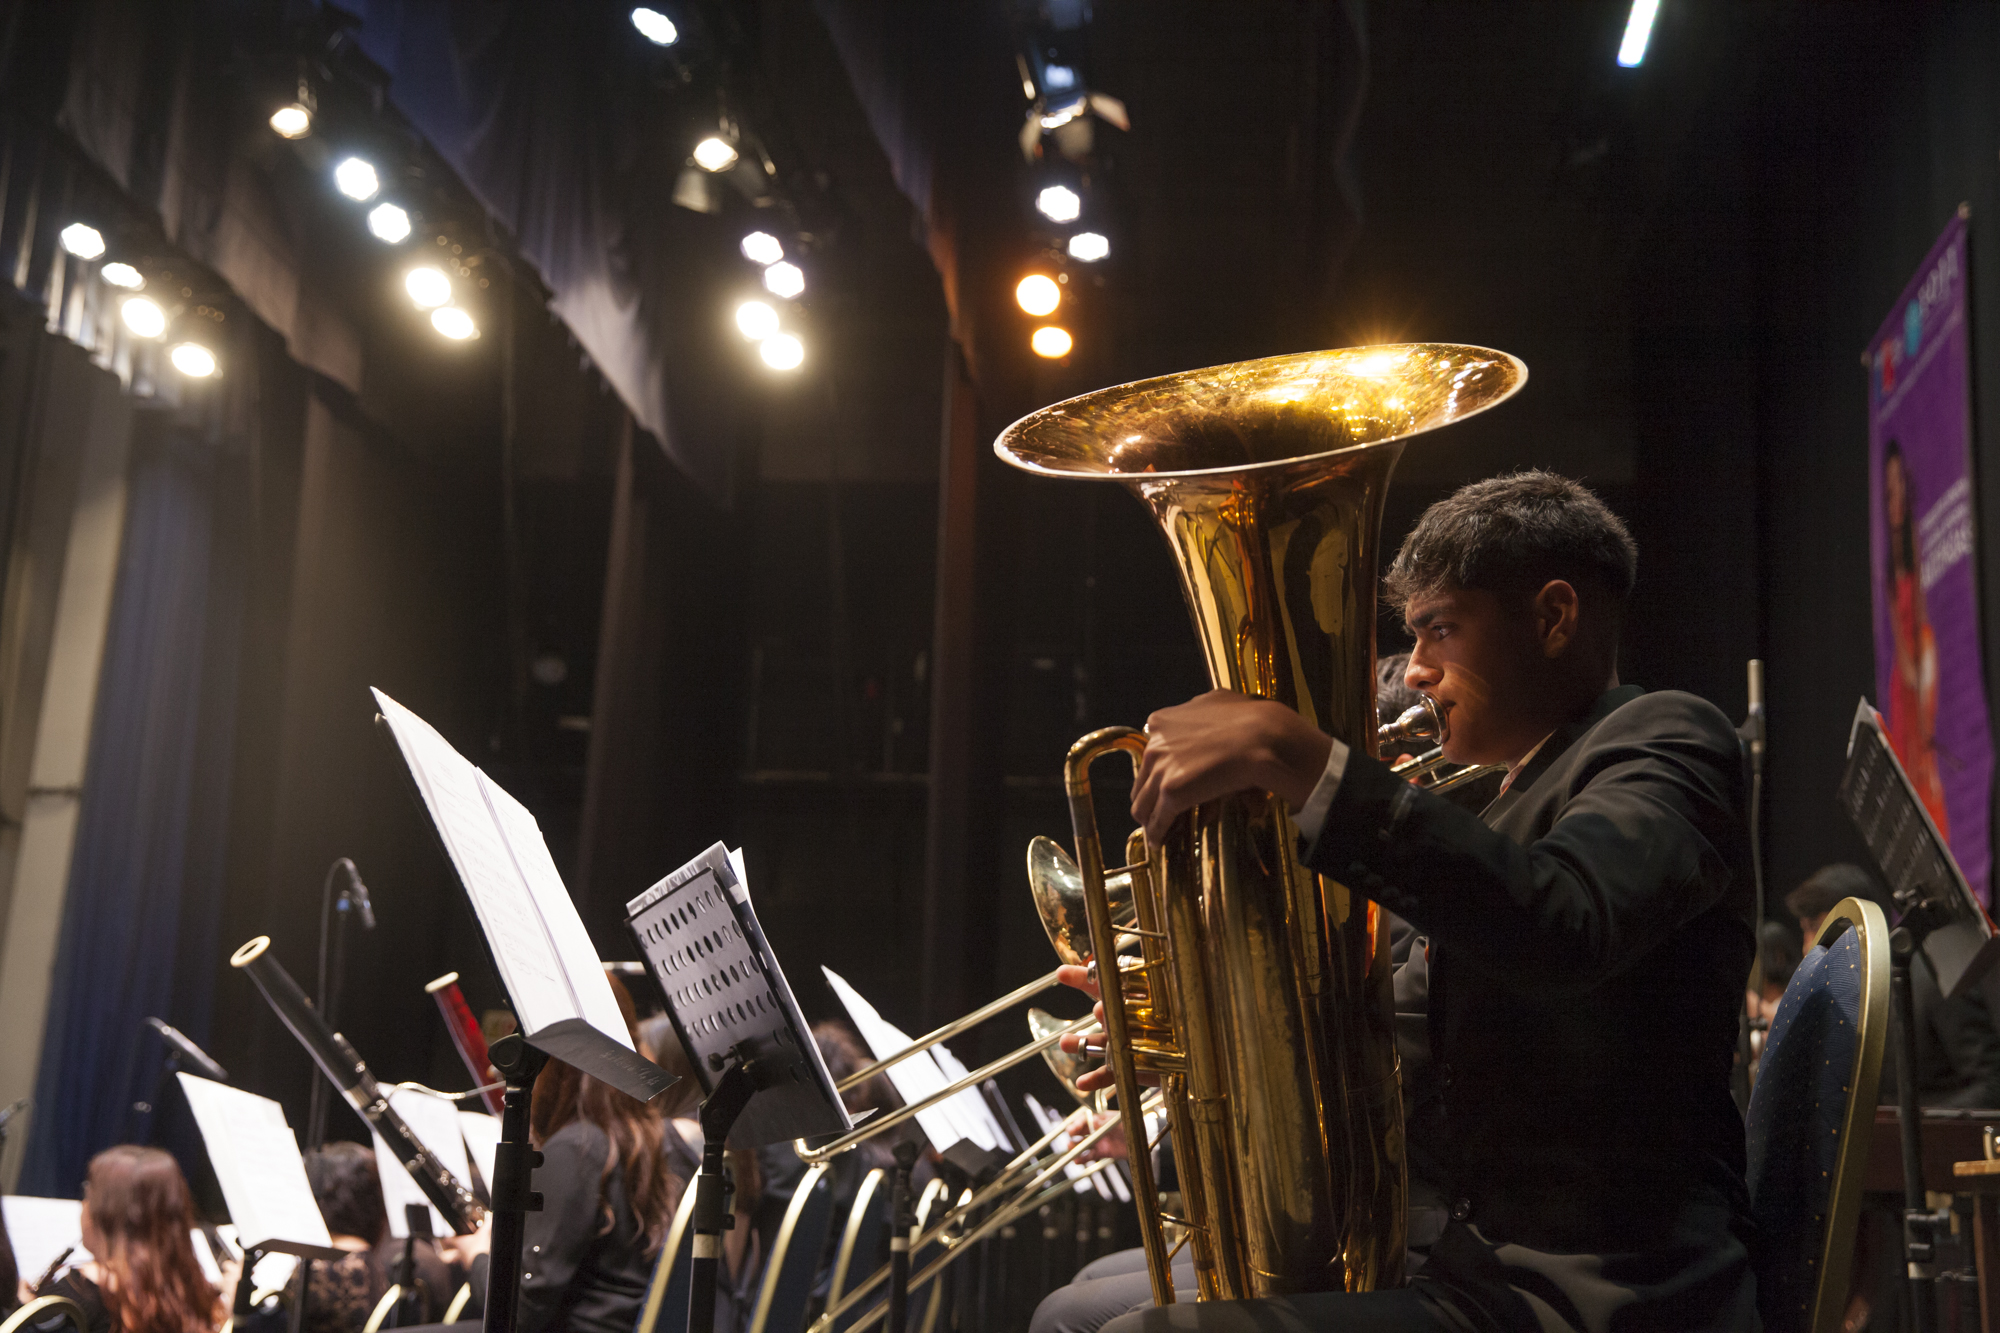 Orquestas Sinfónicas Juveniles Regionales de Magallanes y Coquimbo preparan sus conciertos de gala con varias sorpresas musicales